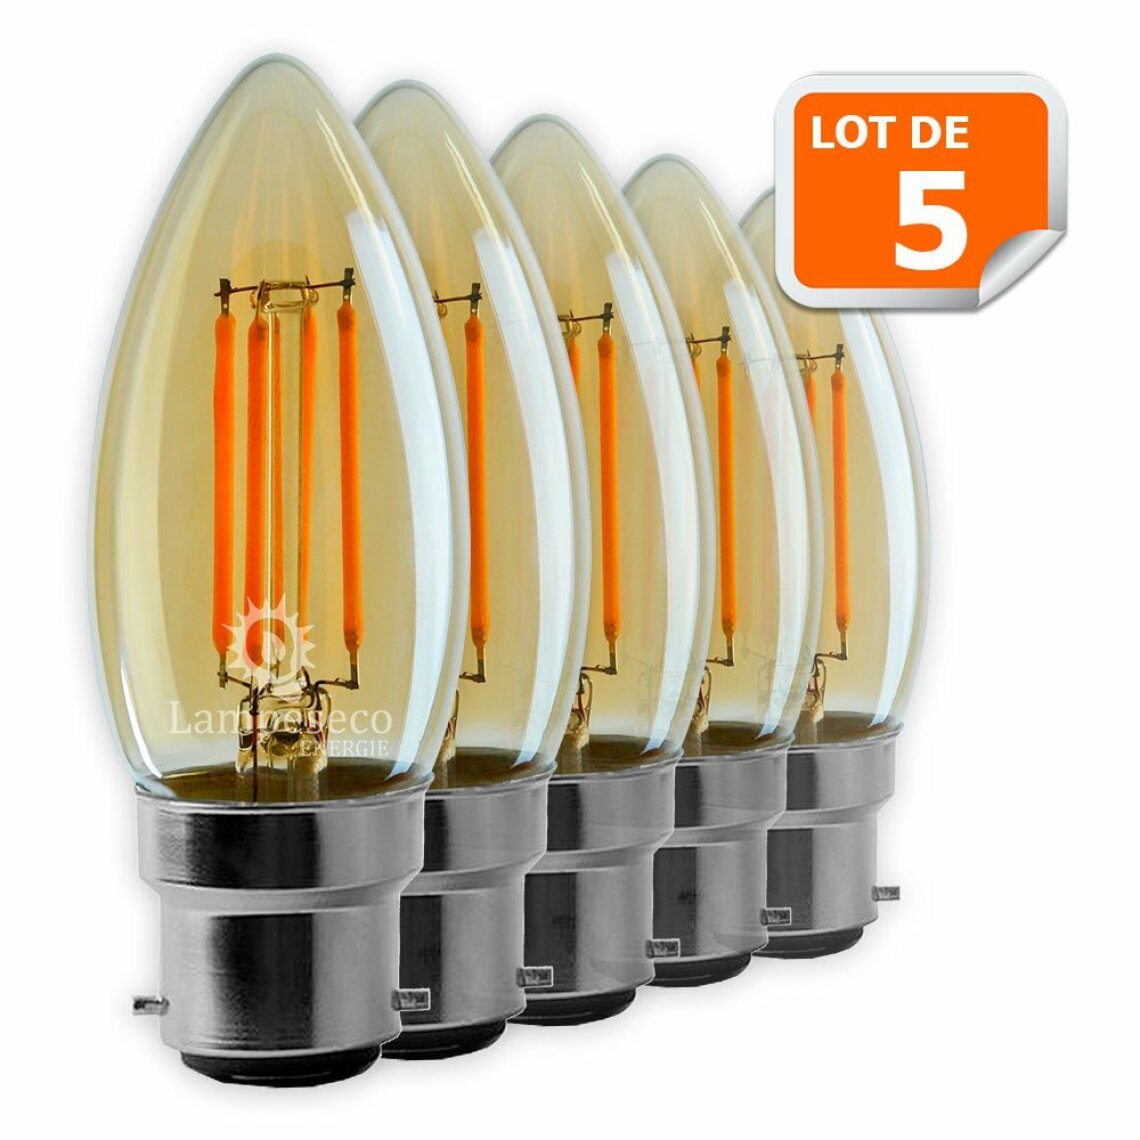 Lampesecoenergie - Lot de 5 Ampoules Led Flamme Filament Doré 4 watt (éq. 42 Watt) Culot B22 - Ampoules LED